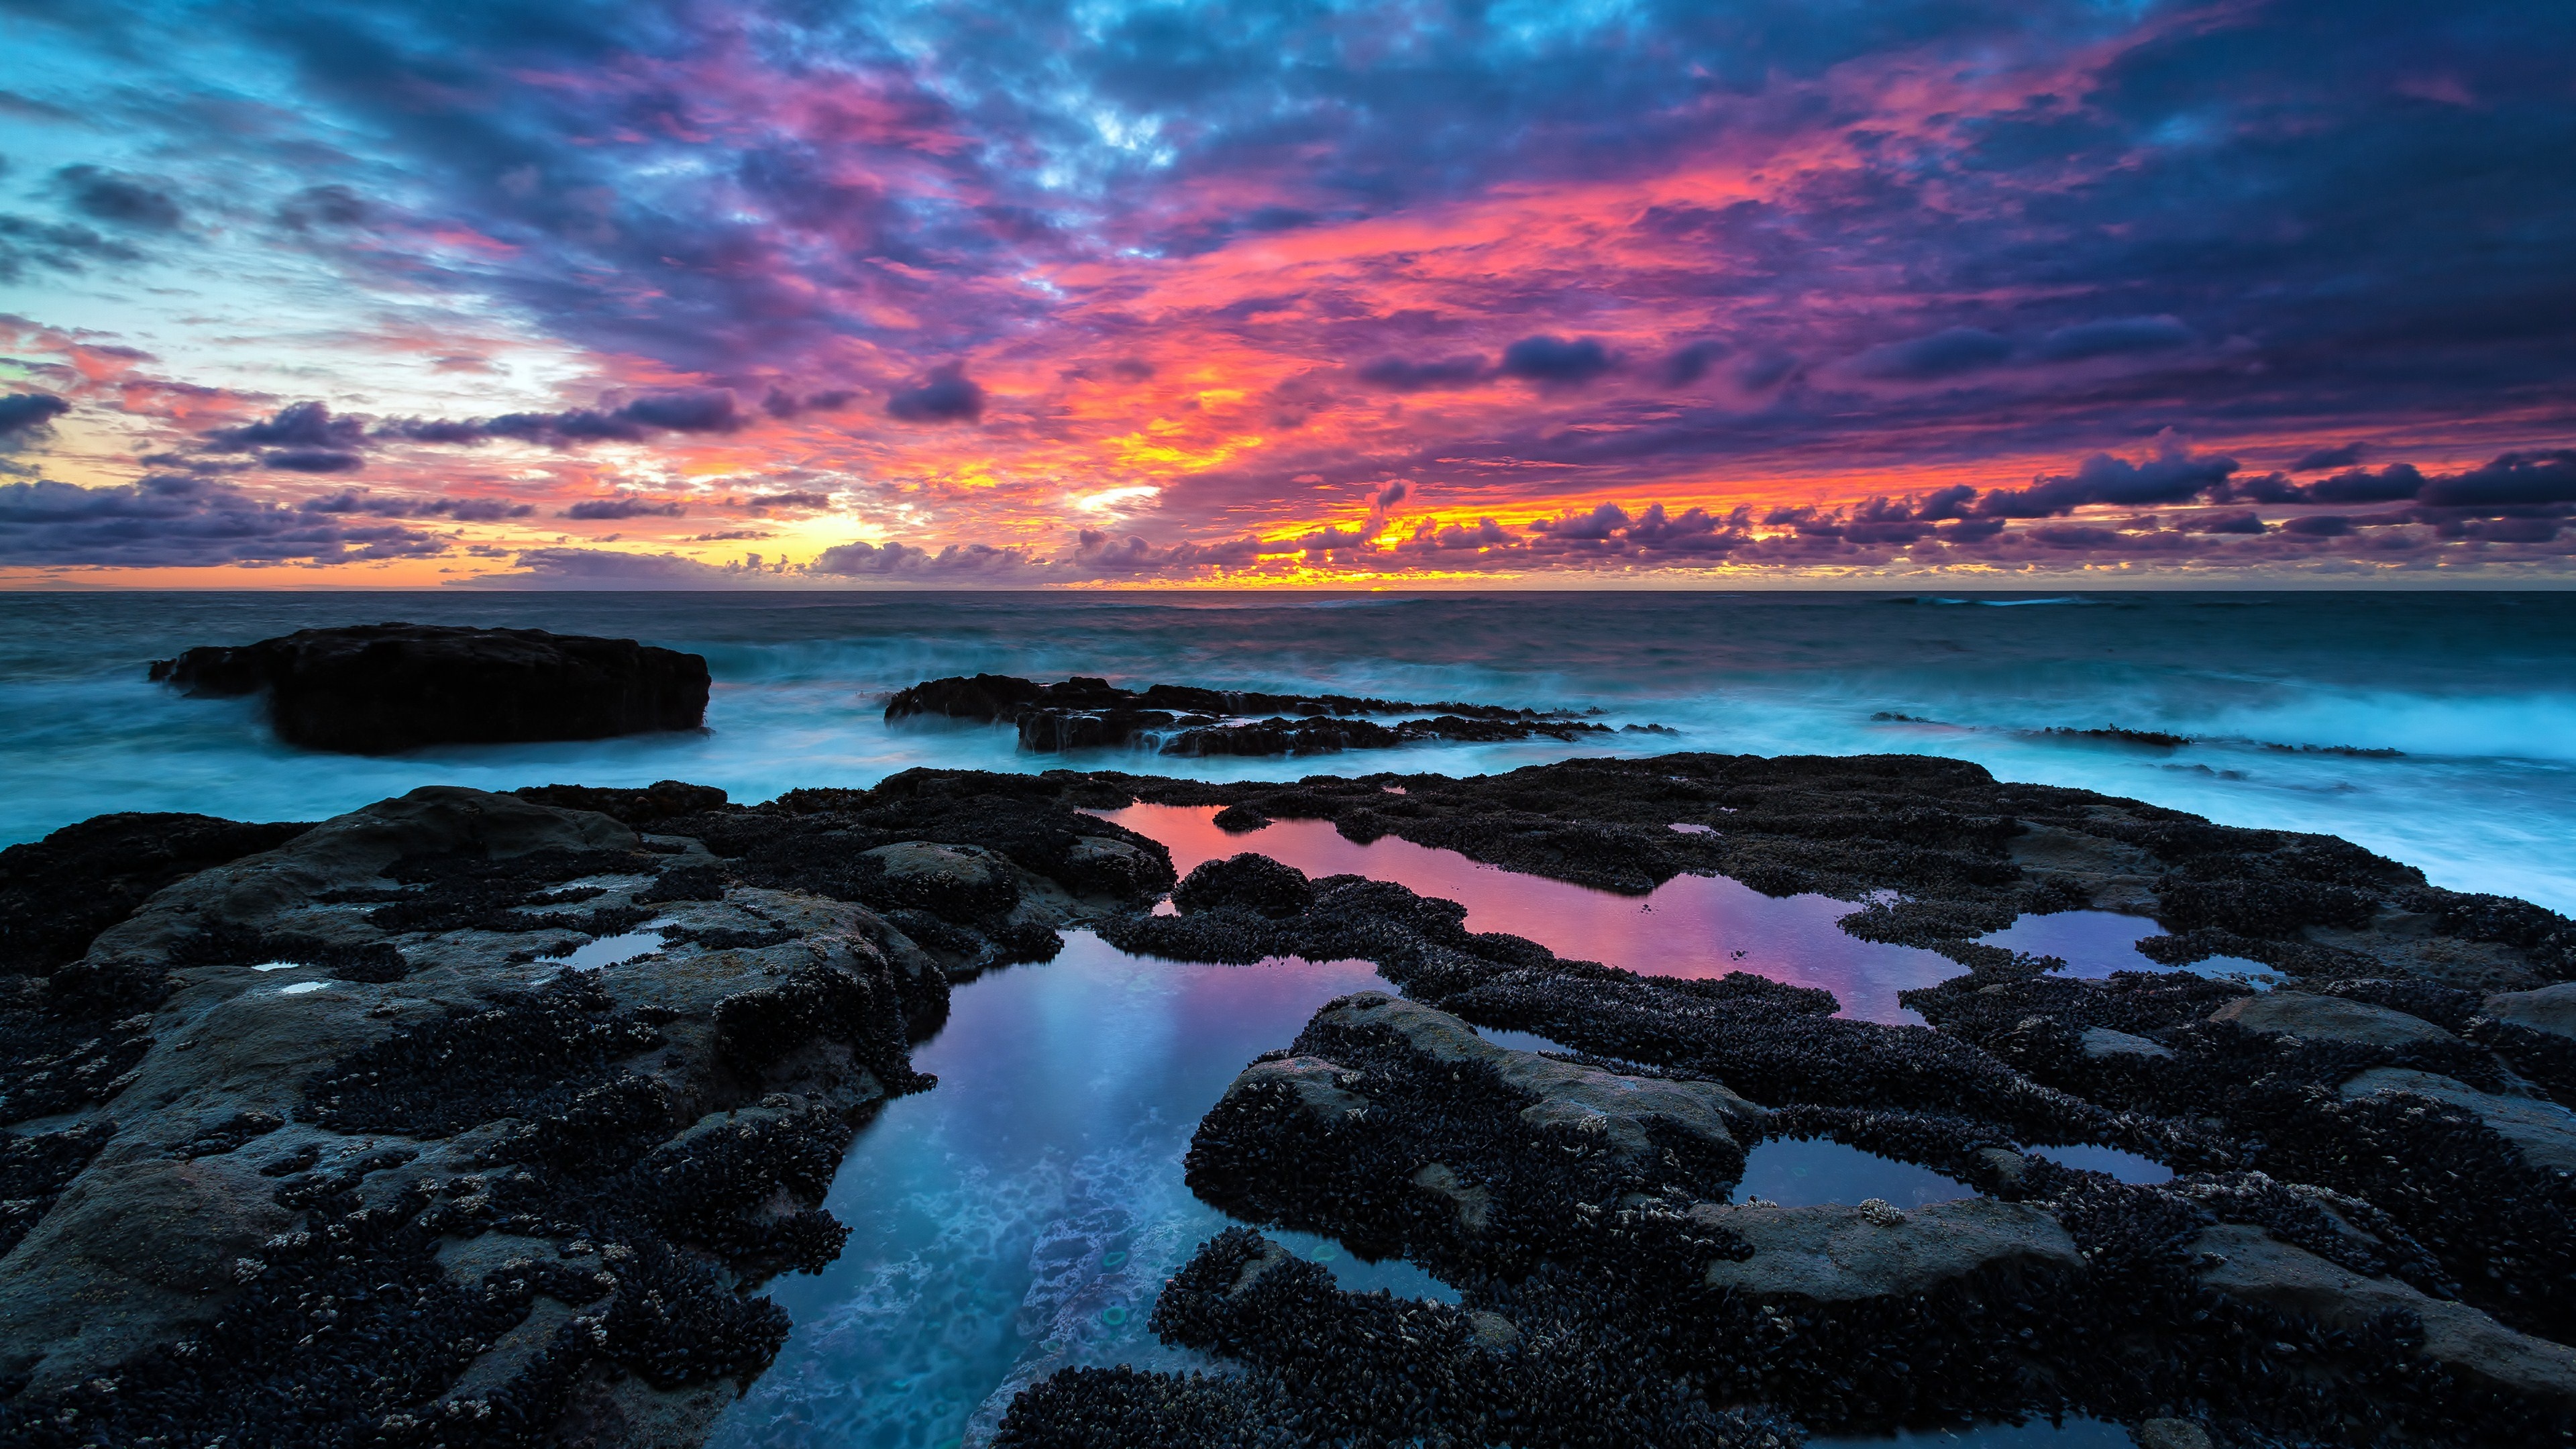 Ocean sunset, 4K Art, Scenic beauty, Vibrant colors, 3840x2160 4K Desktop